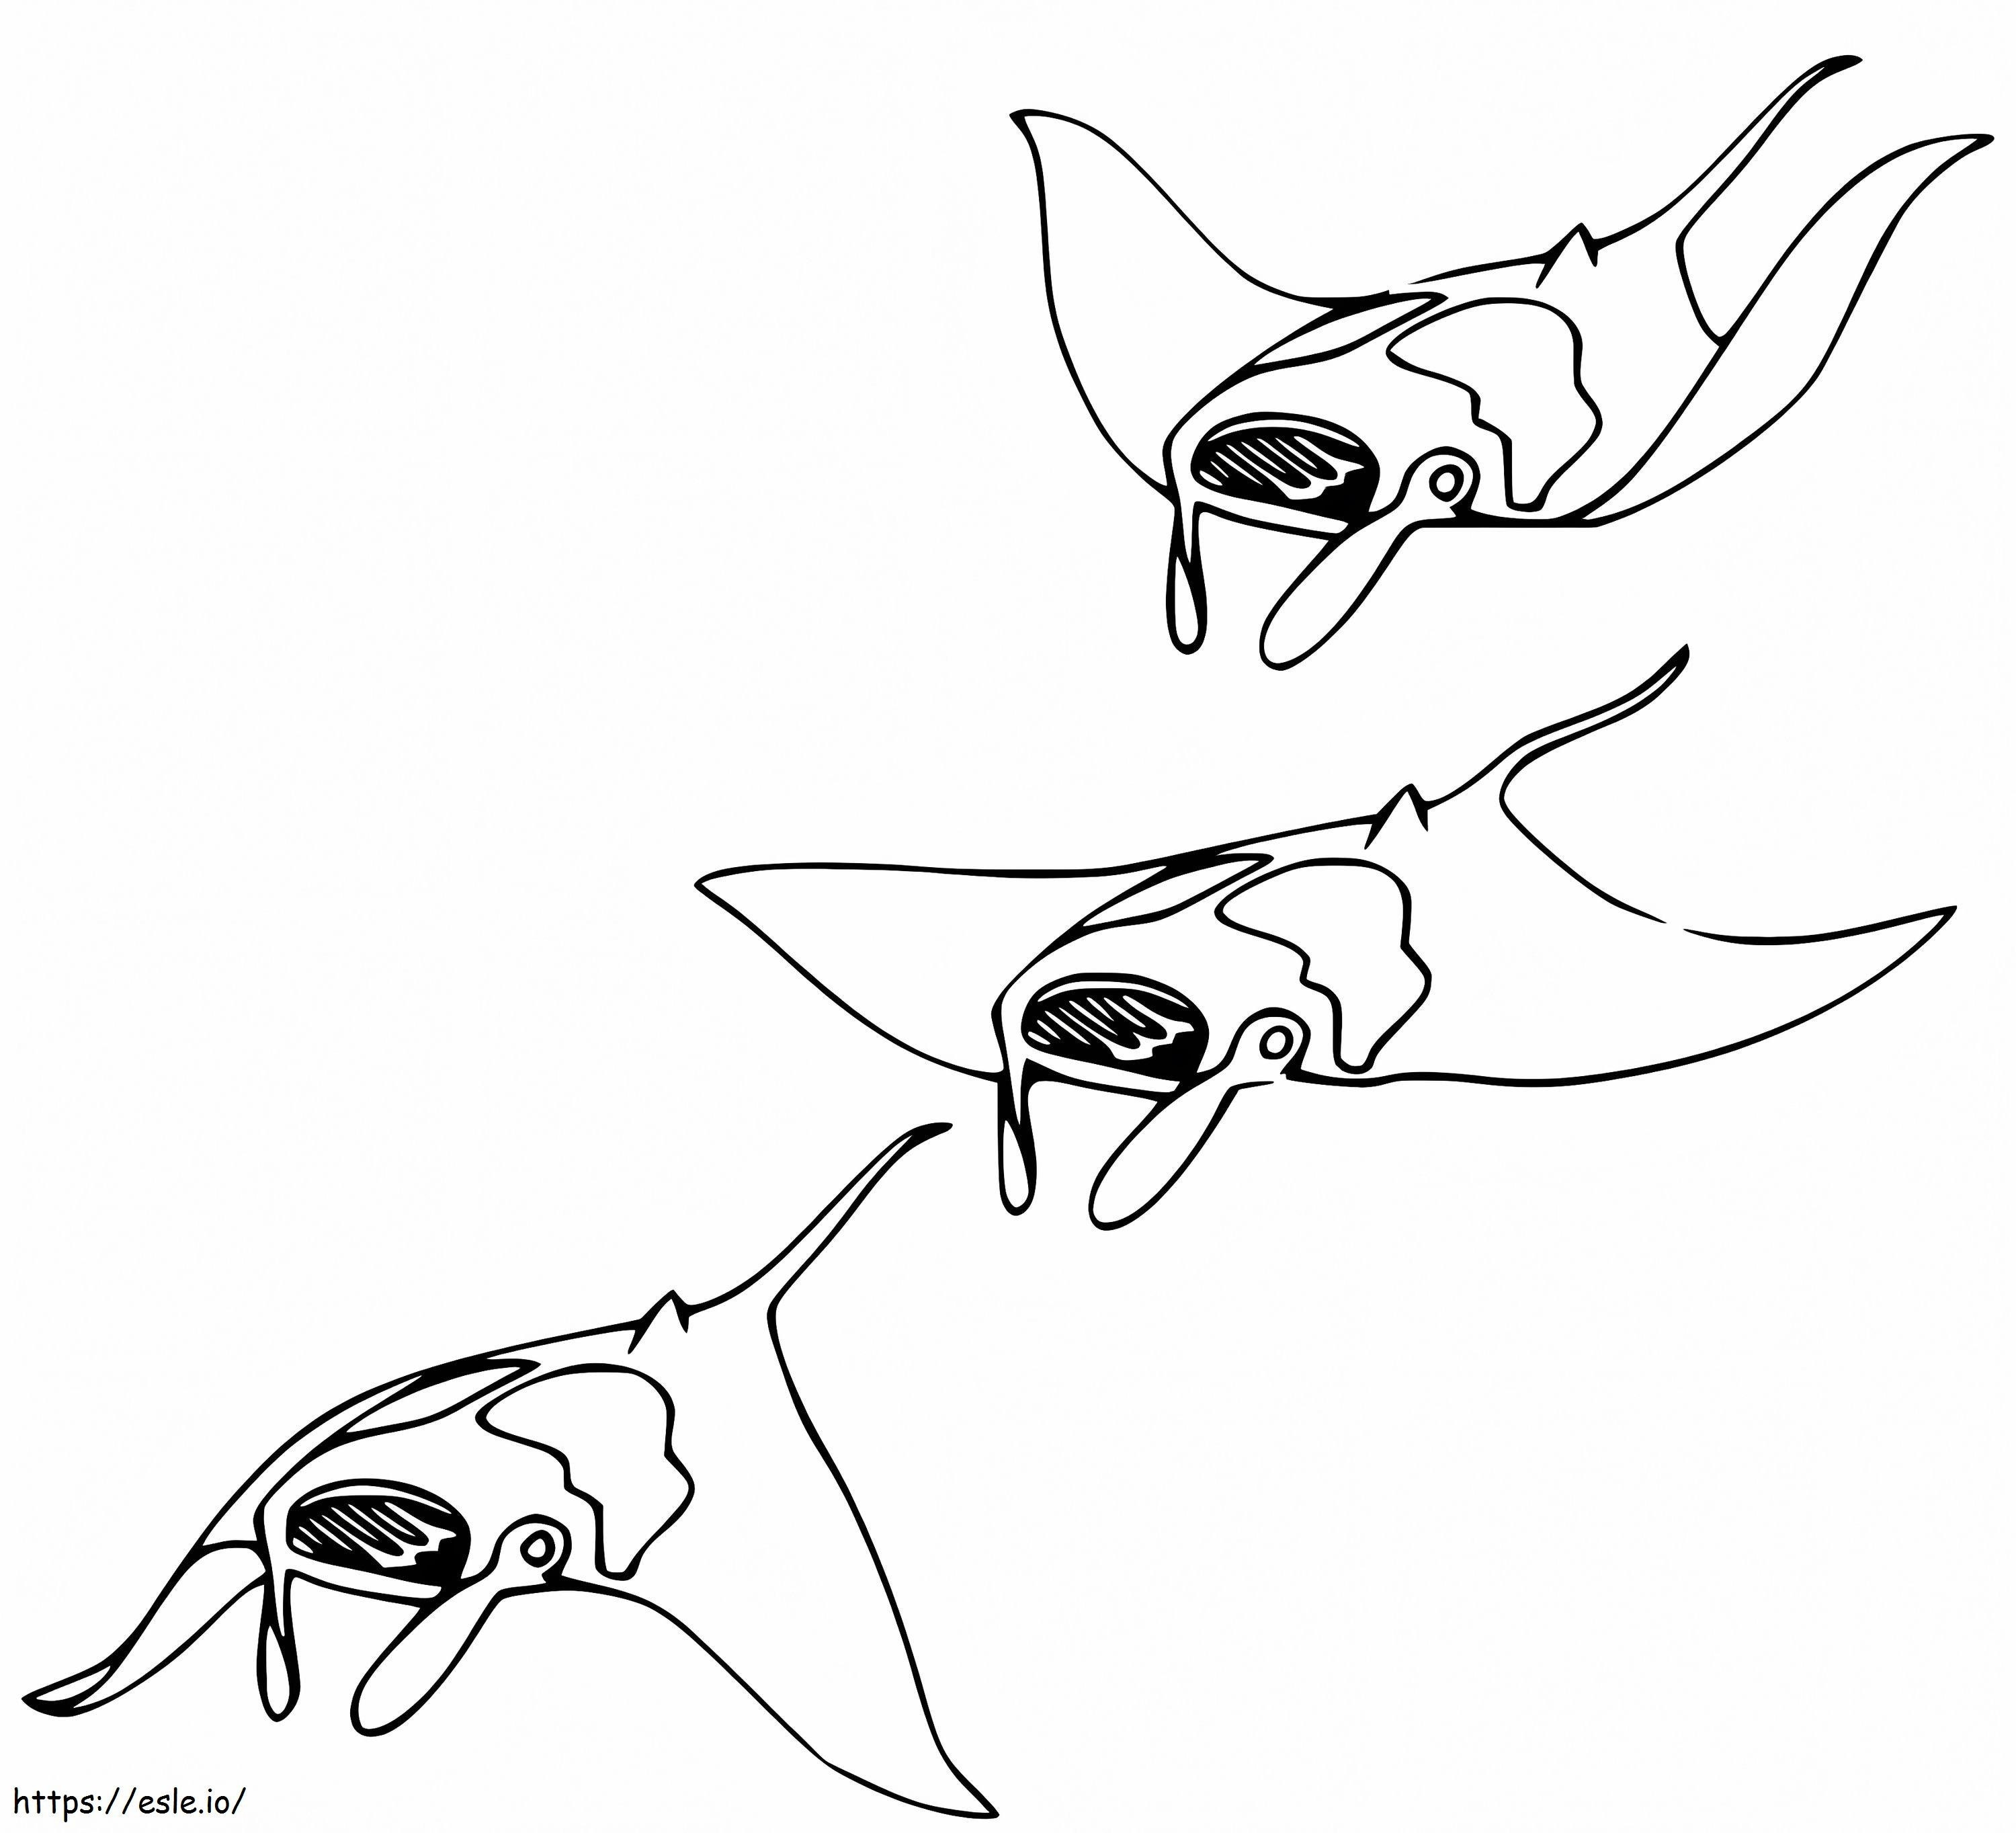 Three Manta Rays coloring page